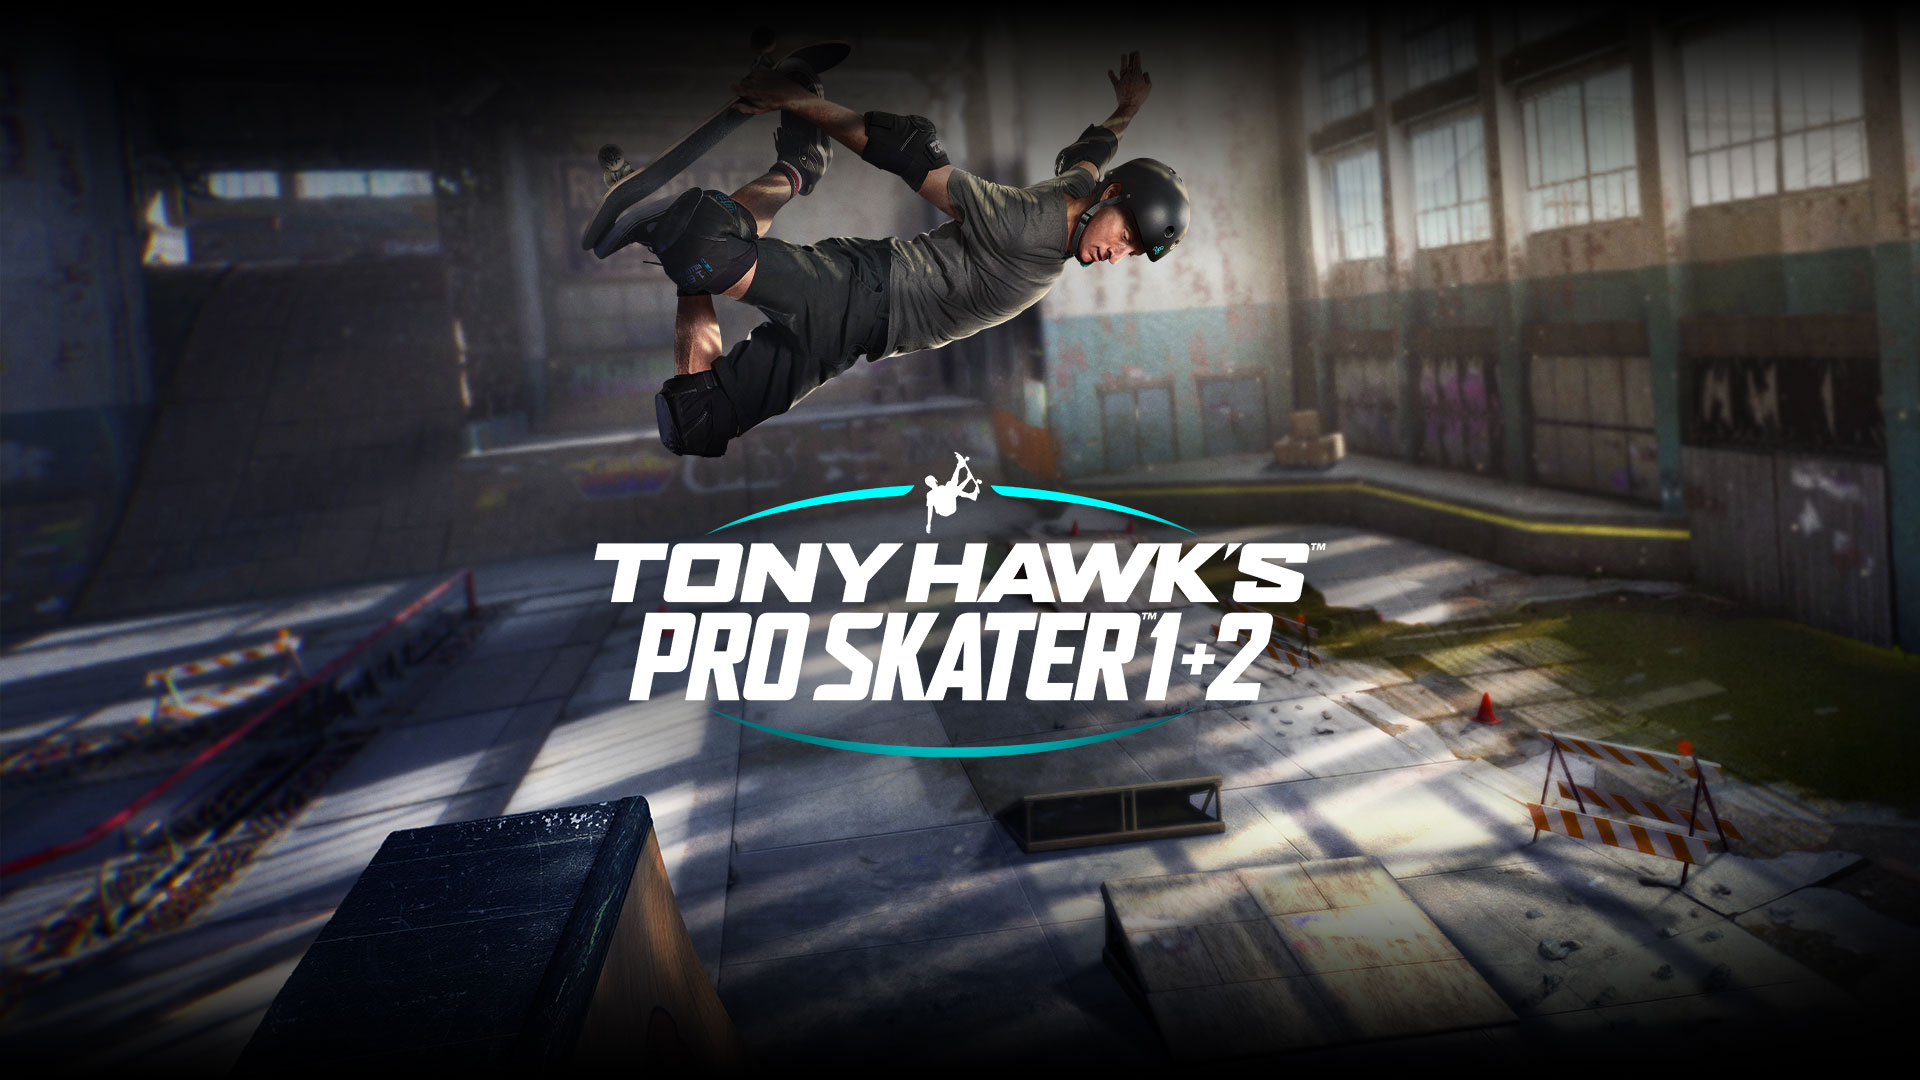 Tony Hawk: قامت Activision بإلغاء ريميك ألعاب Tony Hawk's Pro Skater 3 & 4 بعد الإعلان عن اندماج Vicarious Visions